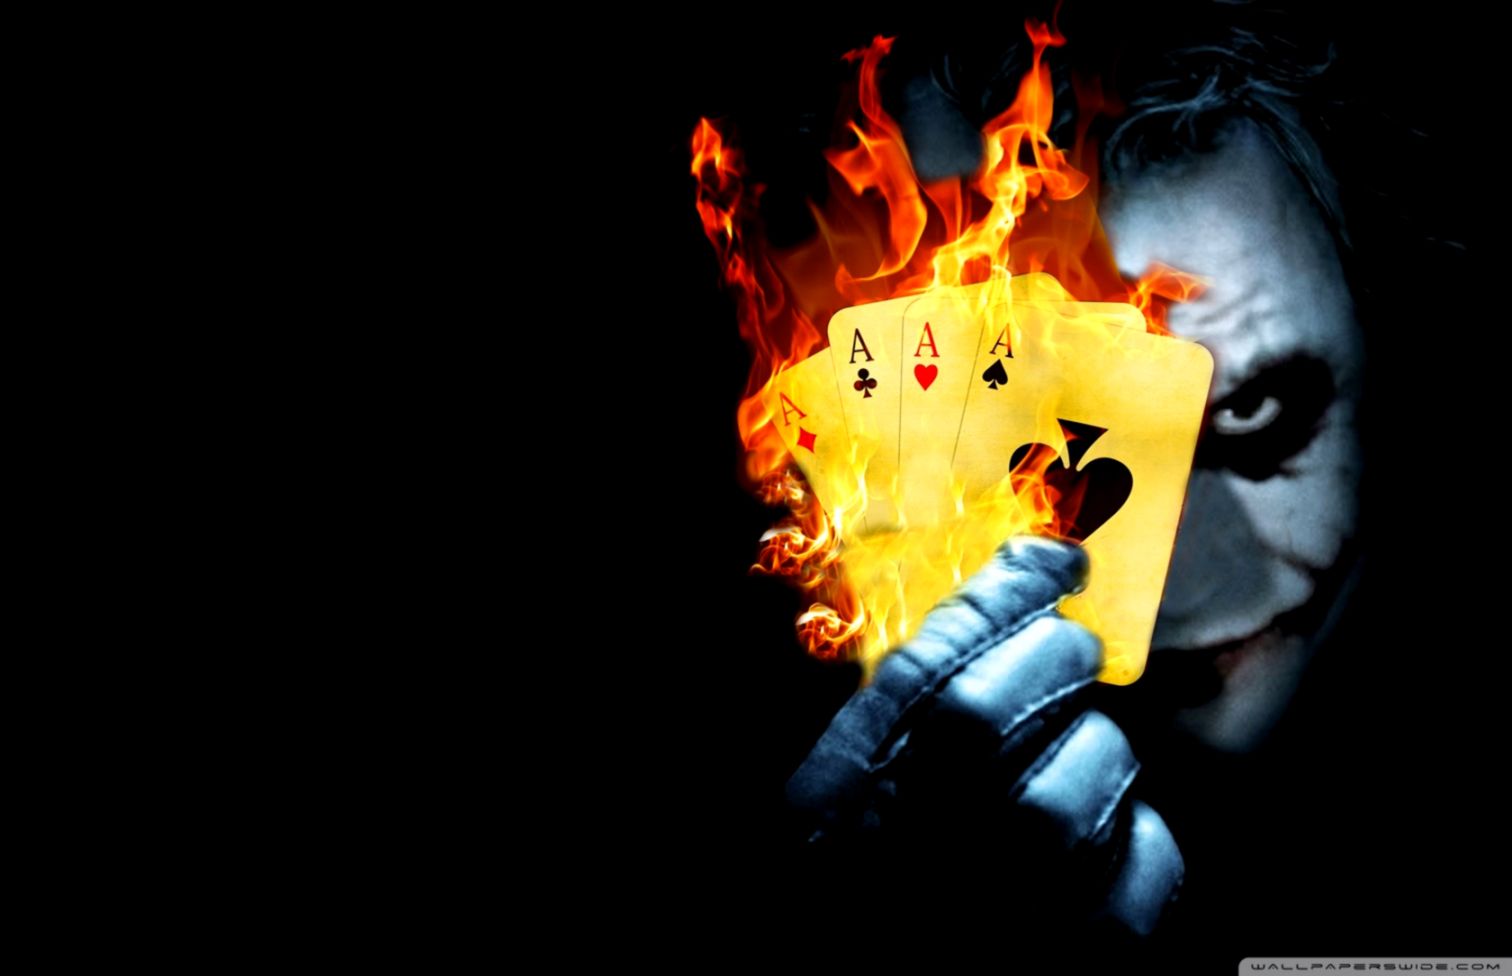 Burning Poker Joker ❤ 4k Hd Desktop Wallpaper For 4k - Ultra Hd Joker 4k -  1512x976 Wallpaper 